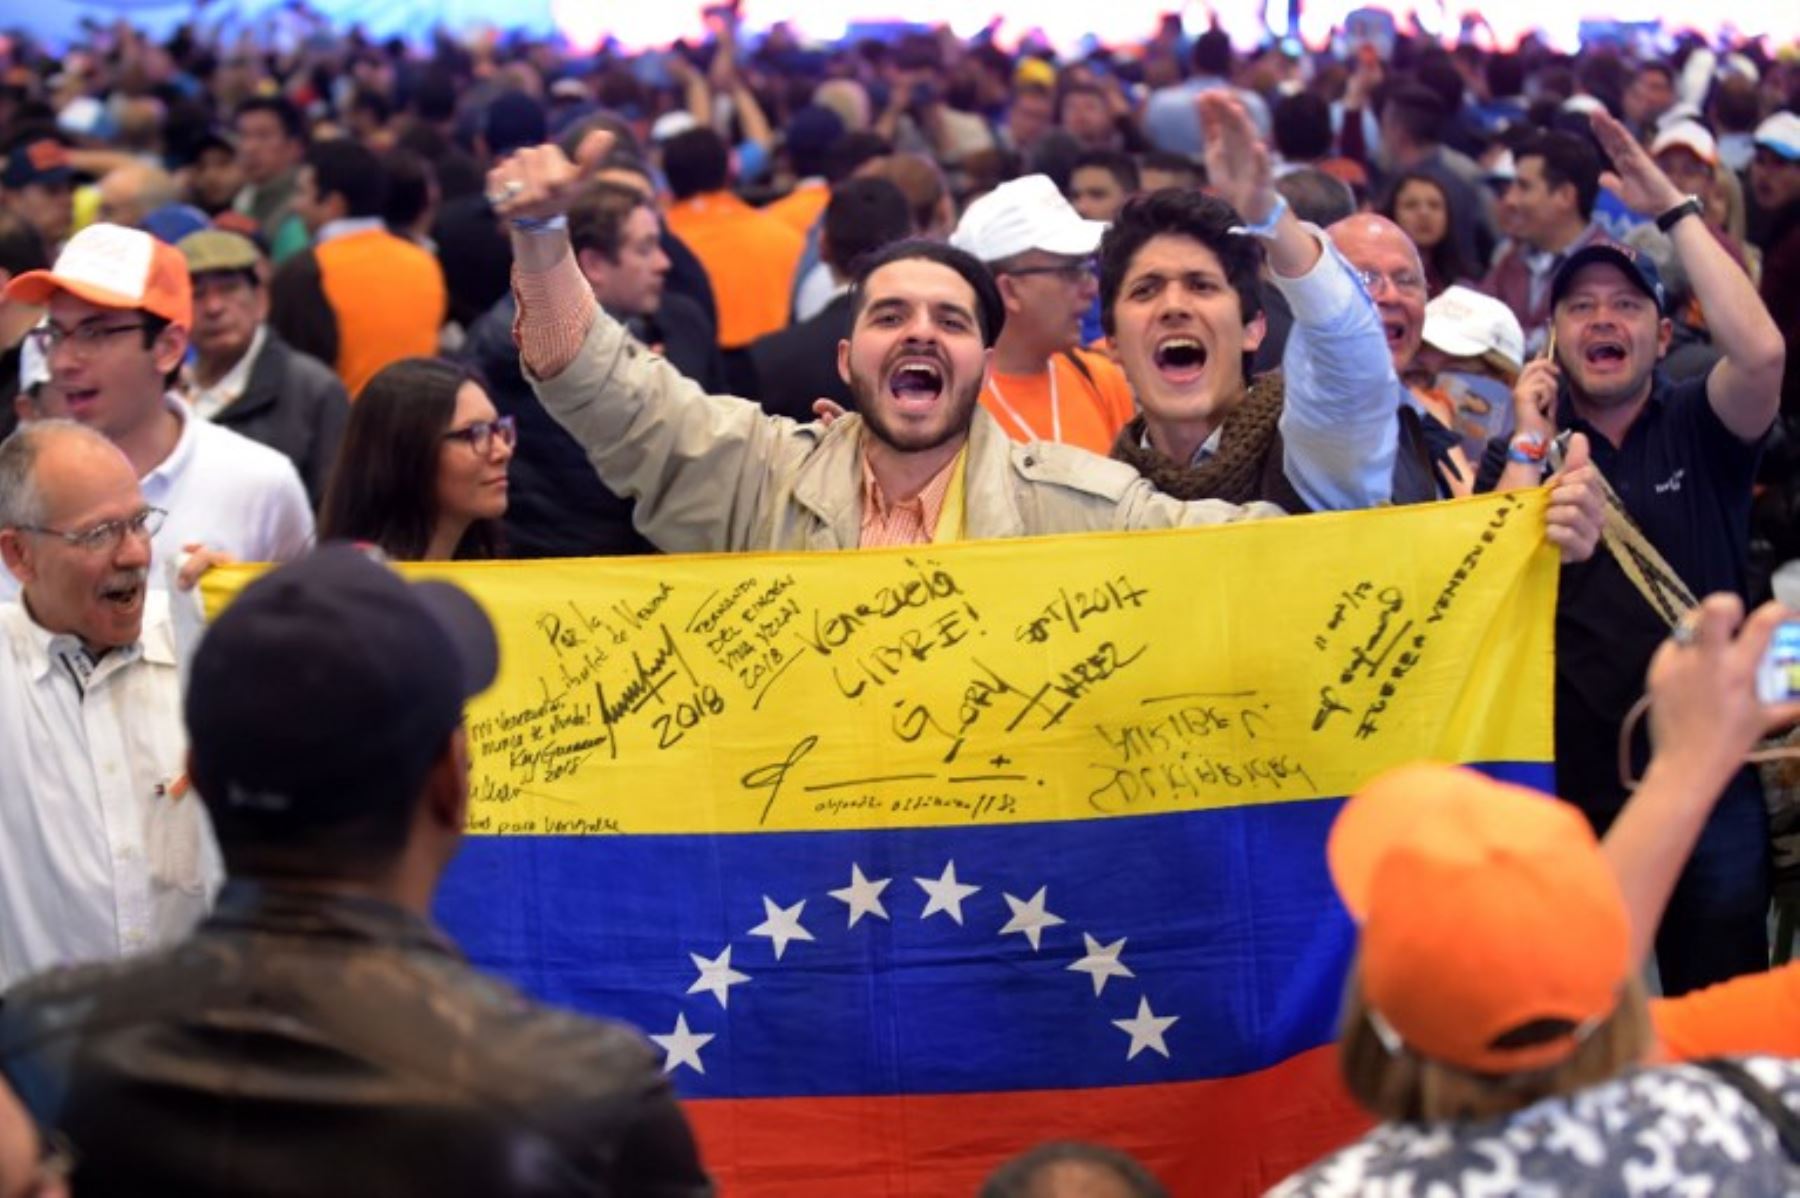 Los partidarios del candidato presidencial del Partido Centro Democrático de Colombia, Iván Duque, reaccionan en Bogotá cuando llegan los resultados de las elecciones presidenciales de segunda vuelta.Foto:AFP